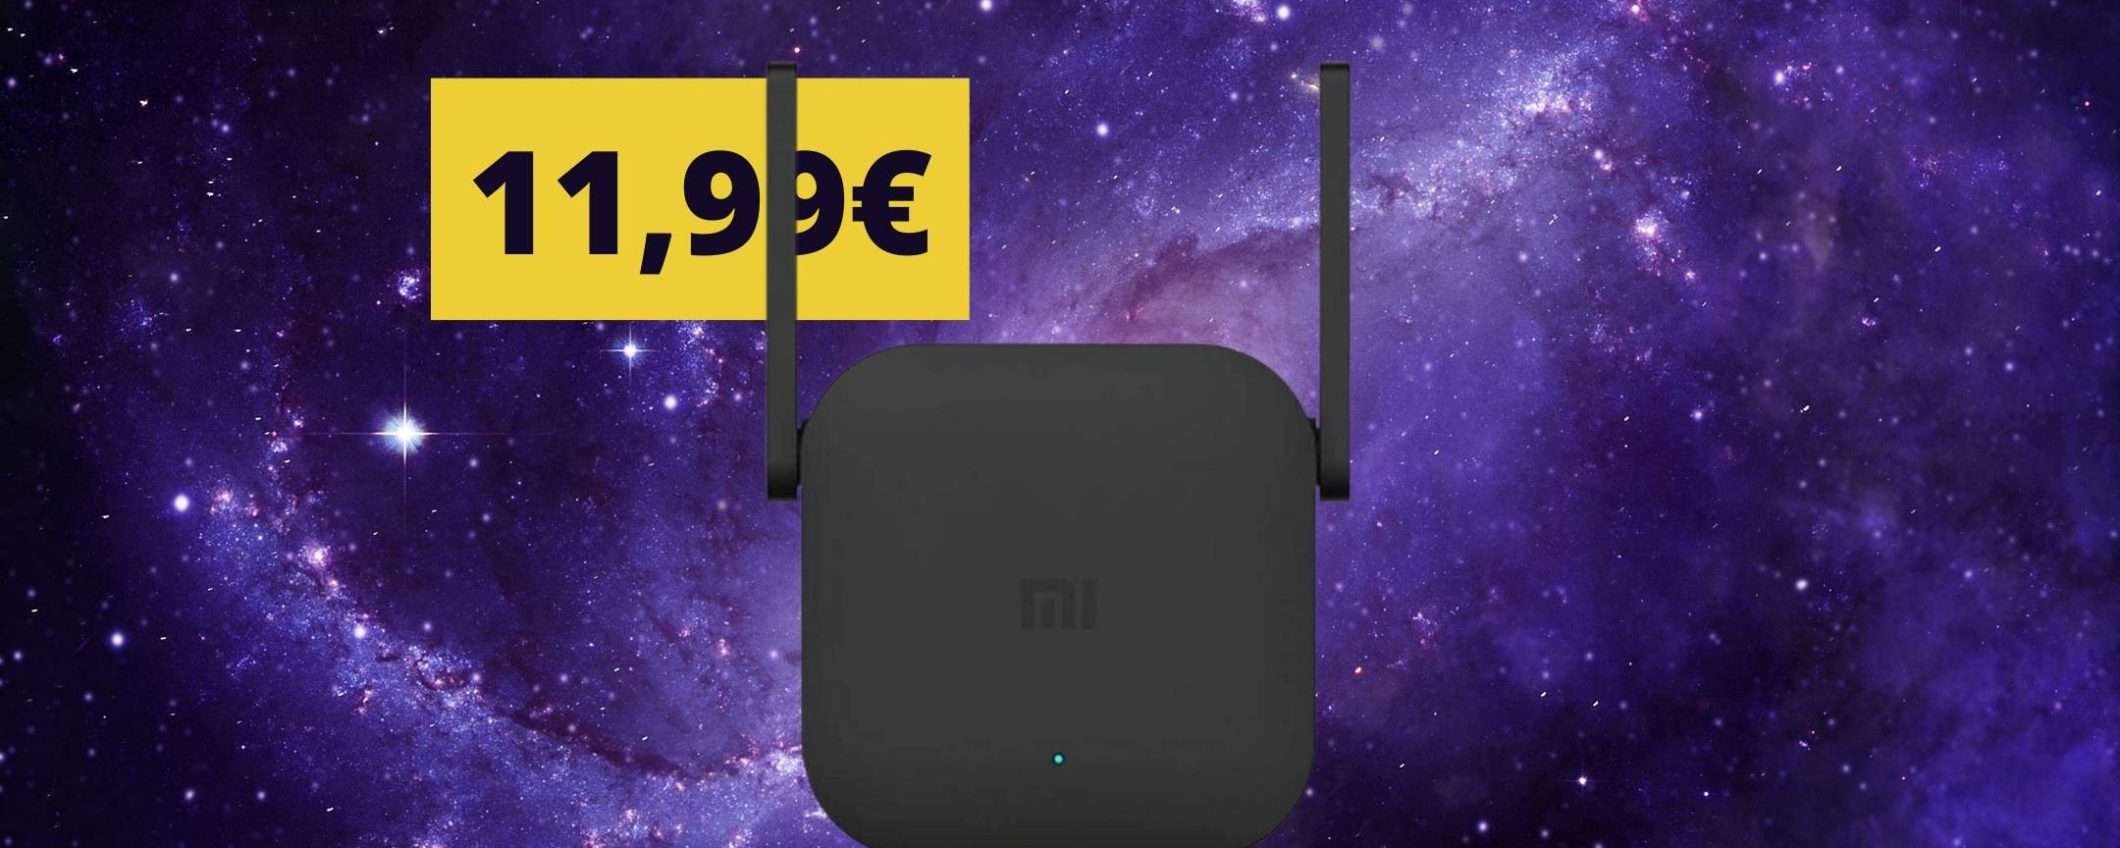 Ripetitore Wi-Fi di Xiaomi ad un prezzo SUPER: solo 11,99€ (ma per poco tempo)